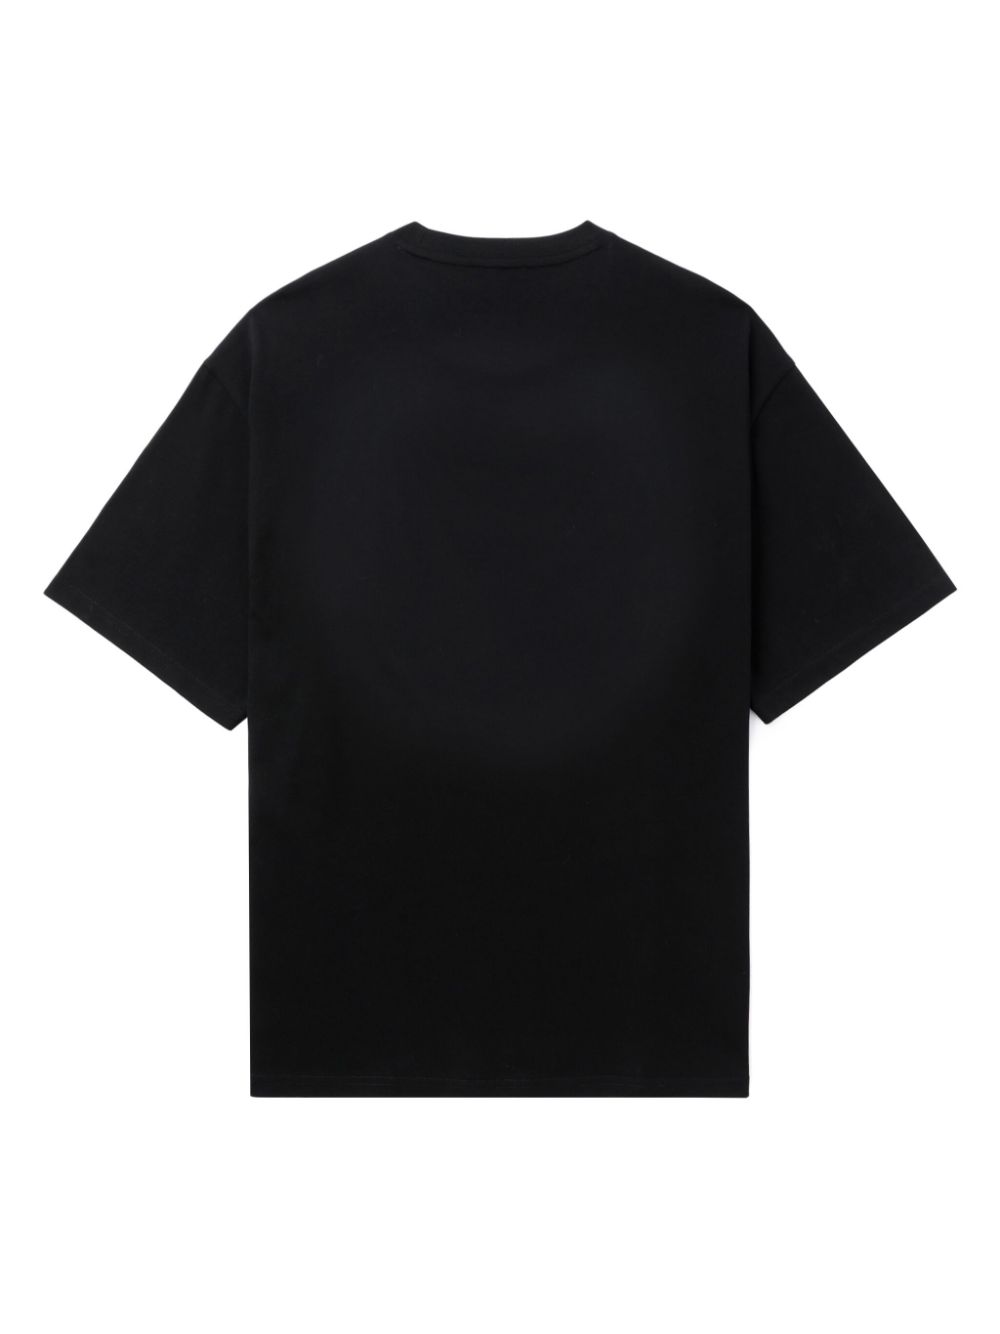 T-shirt noir avec imprimé Scorpions